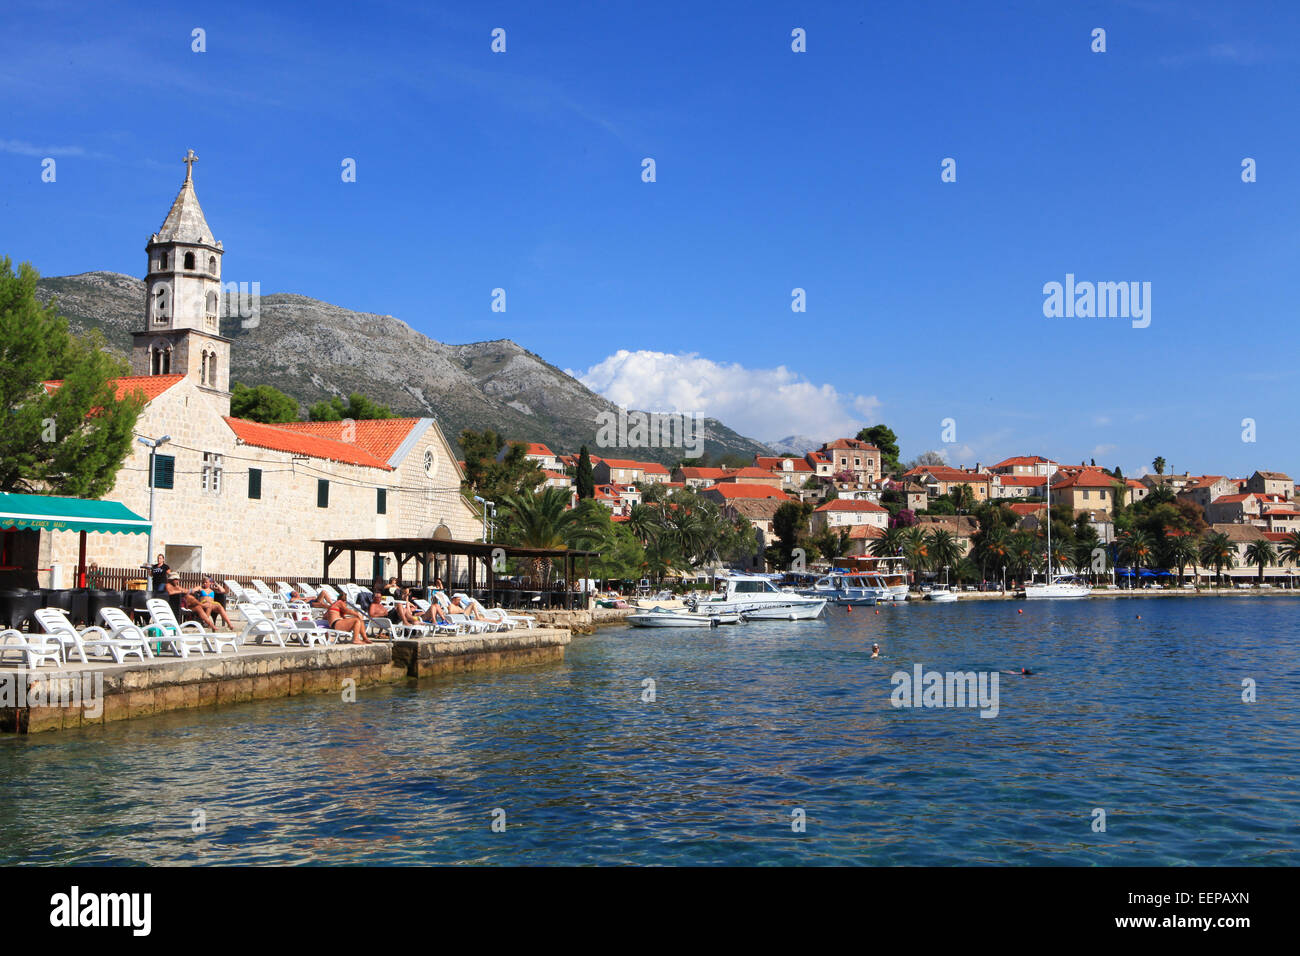 Cavtat, Croatie port, avec des bateaux dans le port et les yachts sur la mer Adreatic ; Europe centrale et de la Méditerranée. Banque D'Images